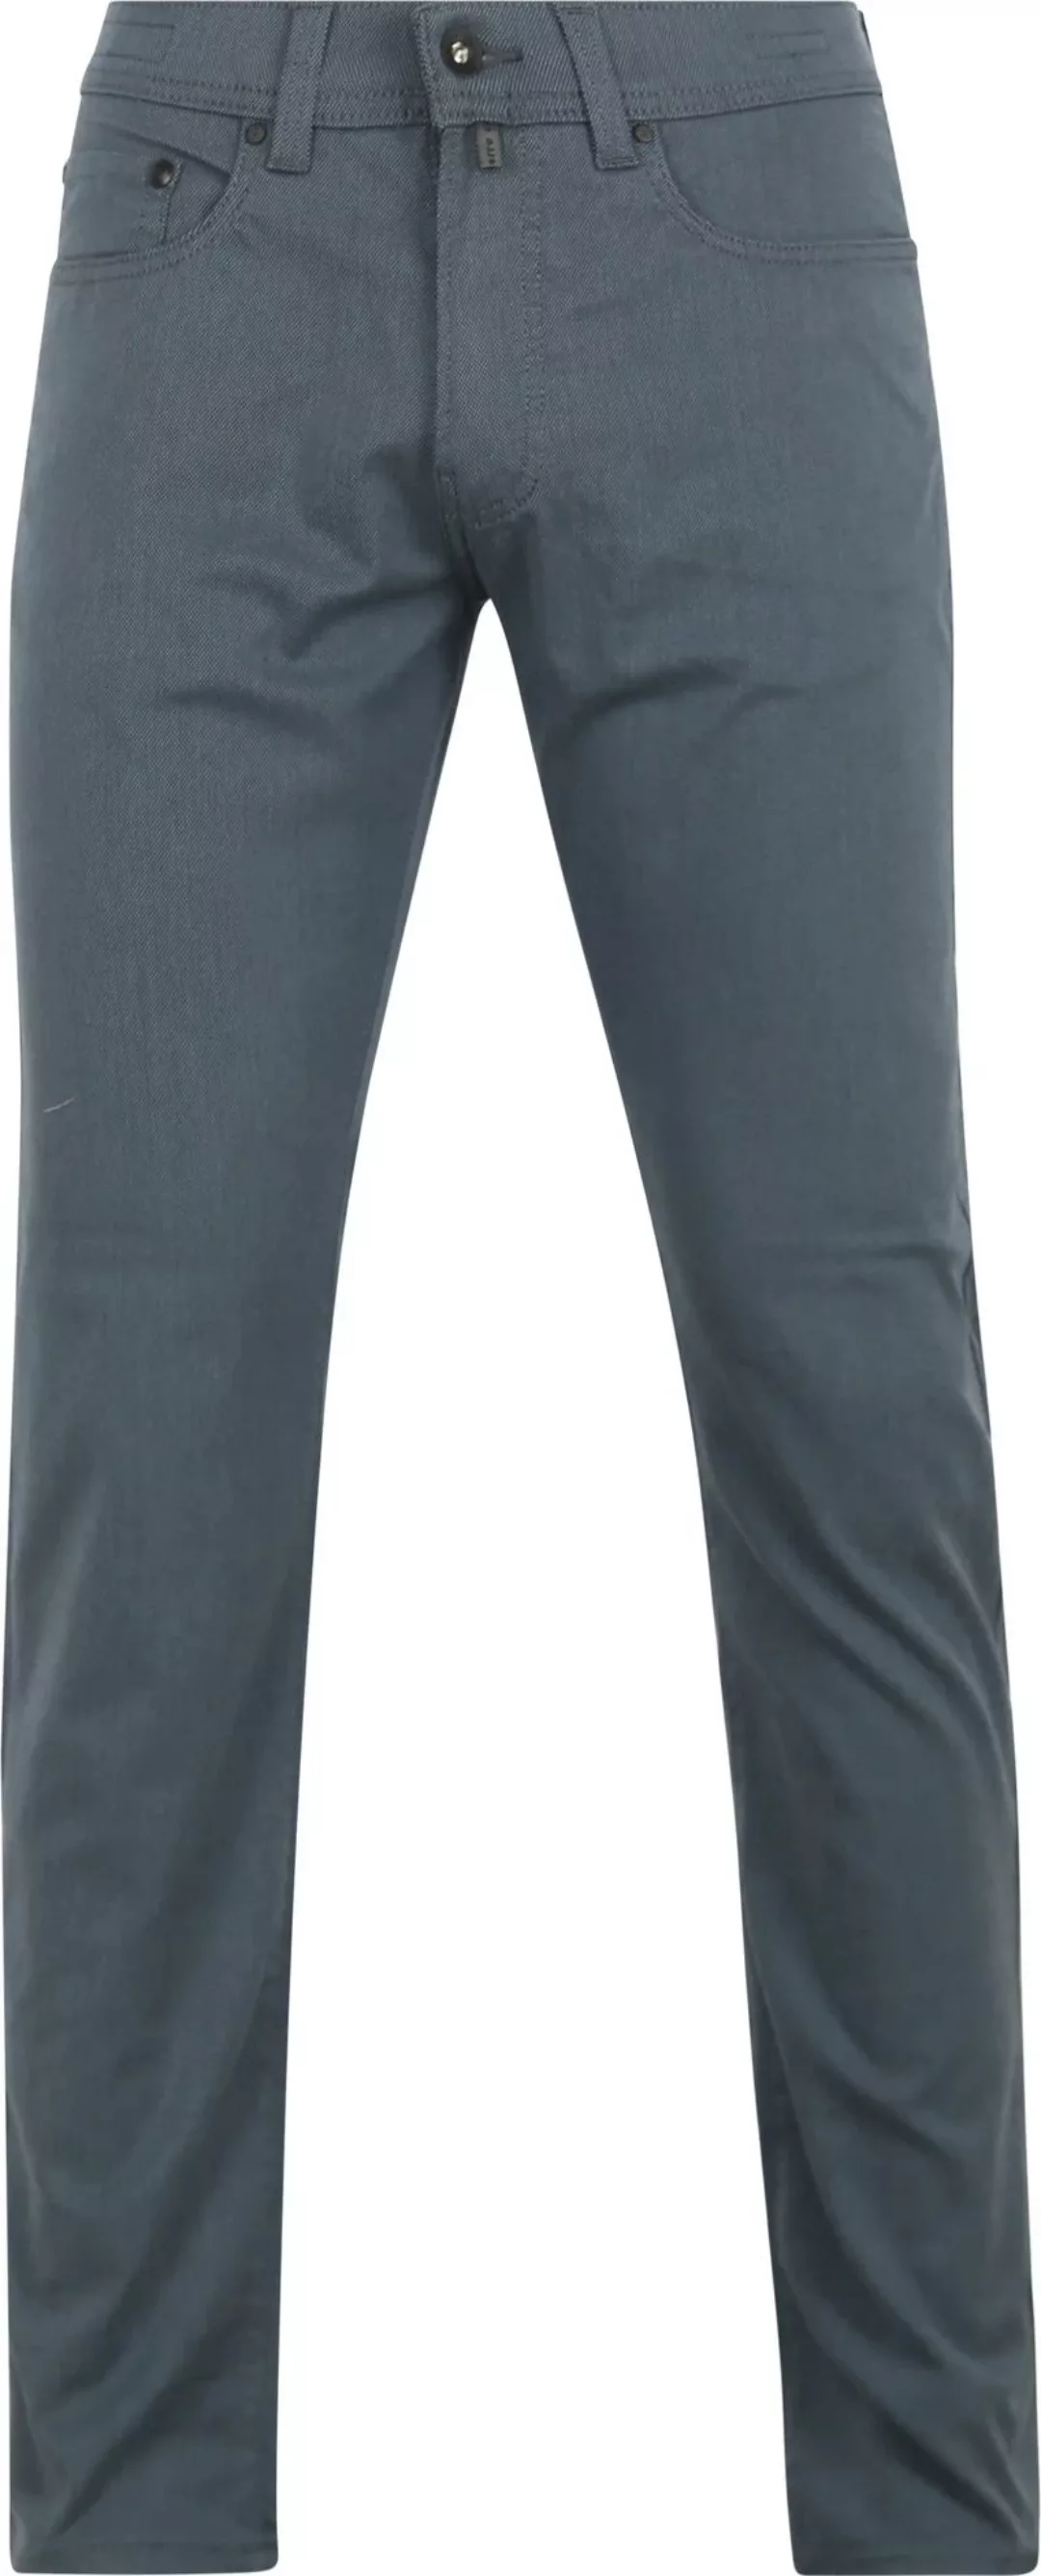 Pierre Cardin Trousers Lyon Tapered Ocean Blau - Größe W 34 - L 32 günstig online kaufen